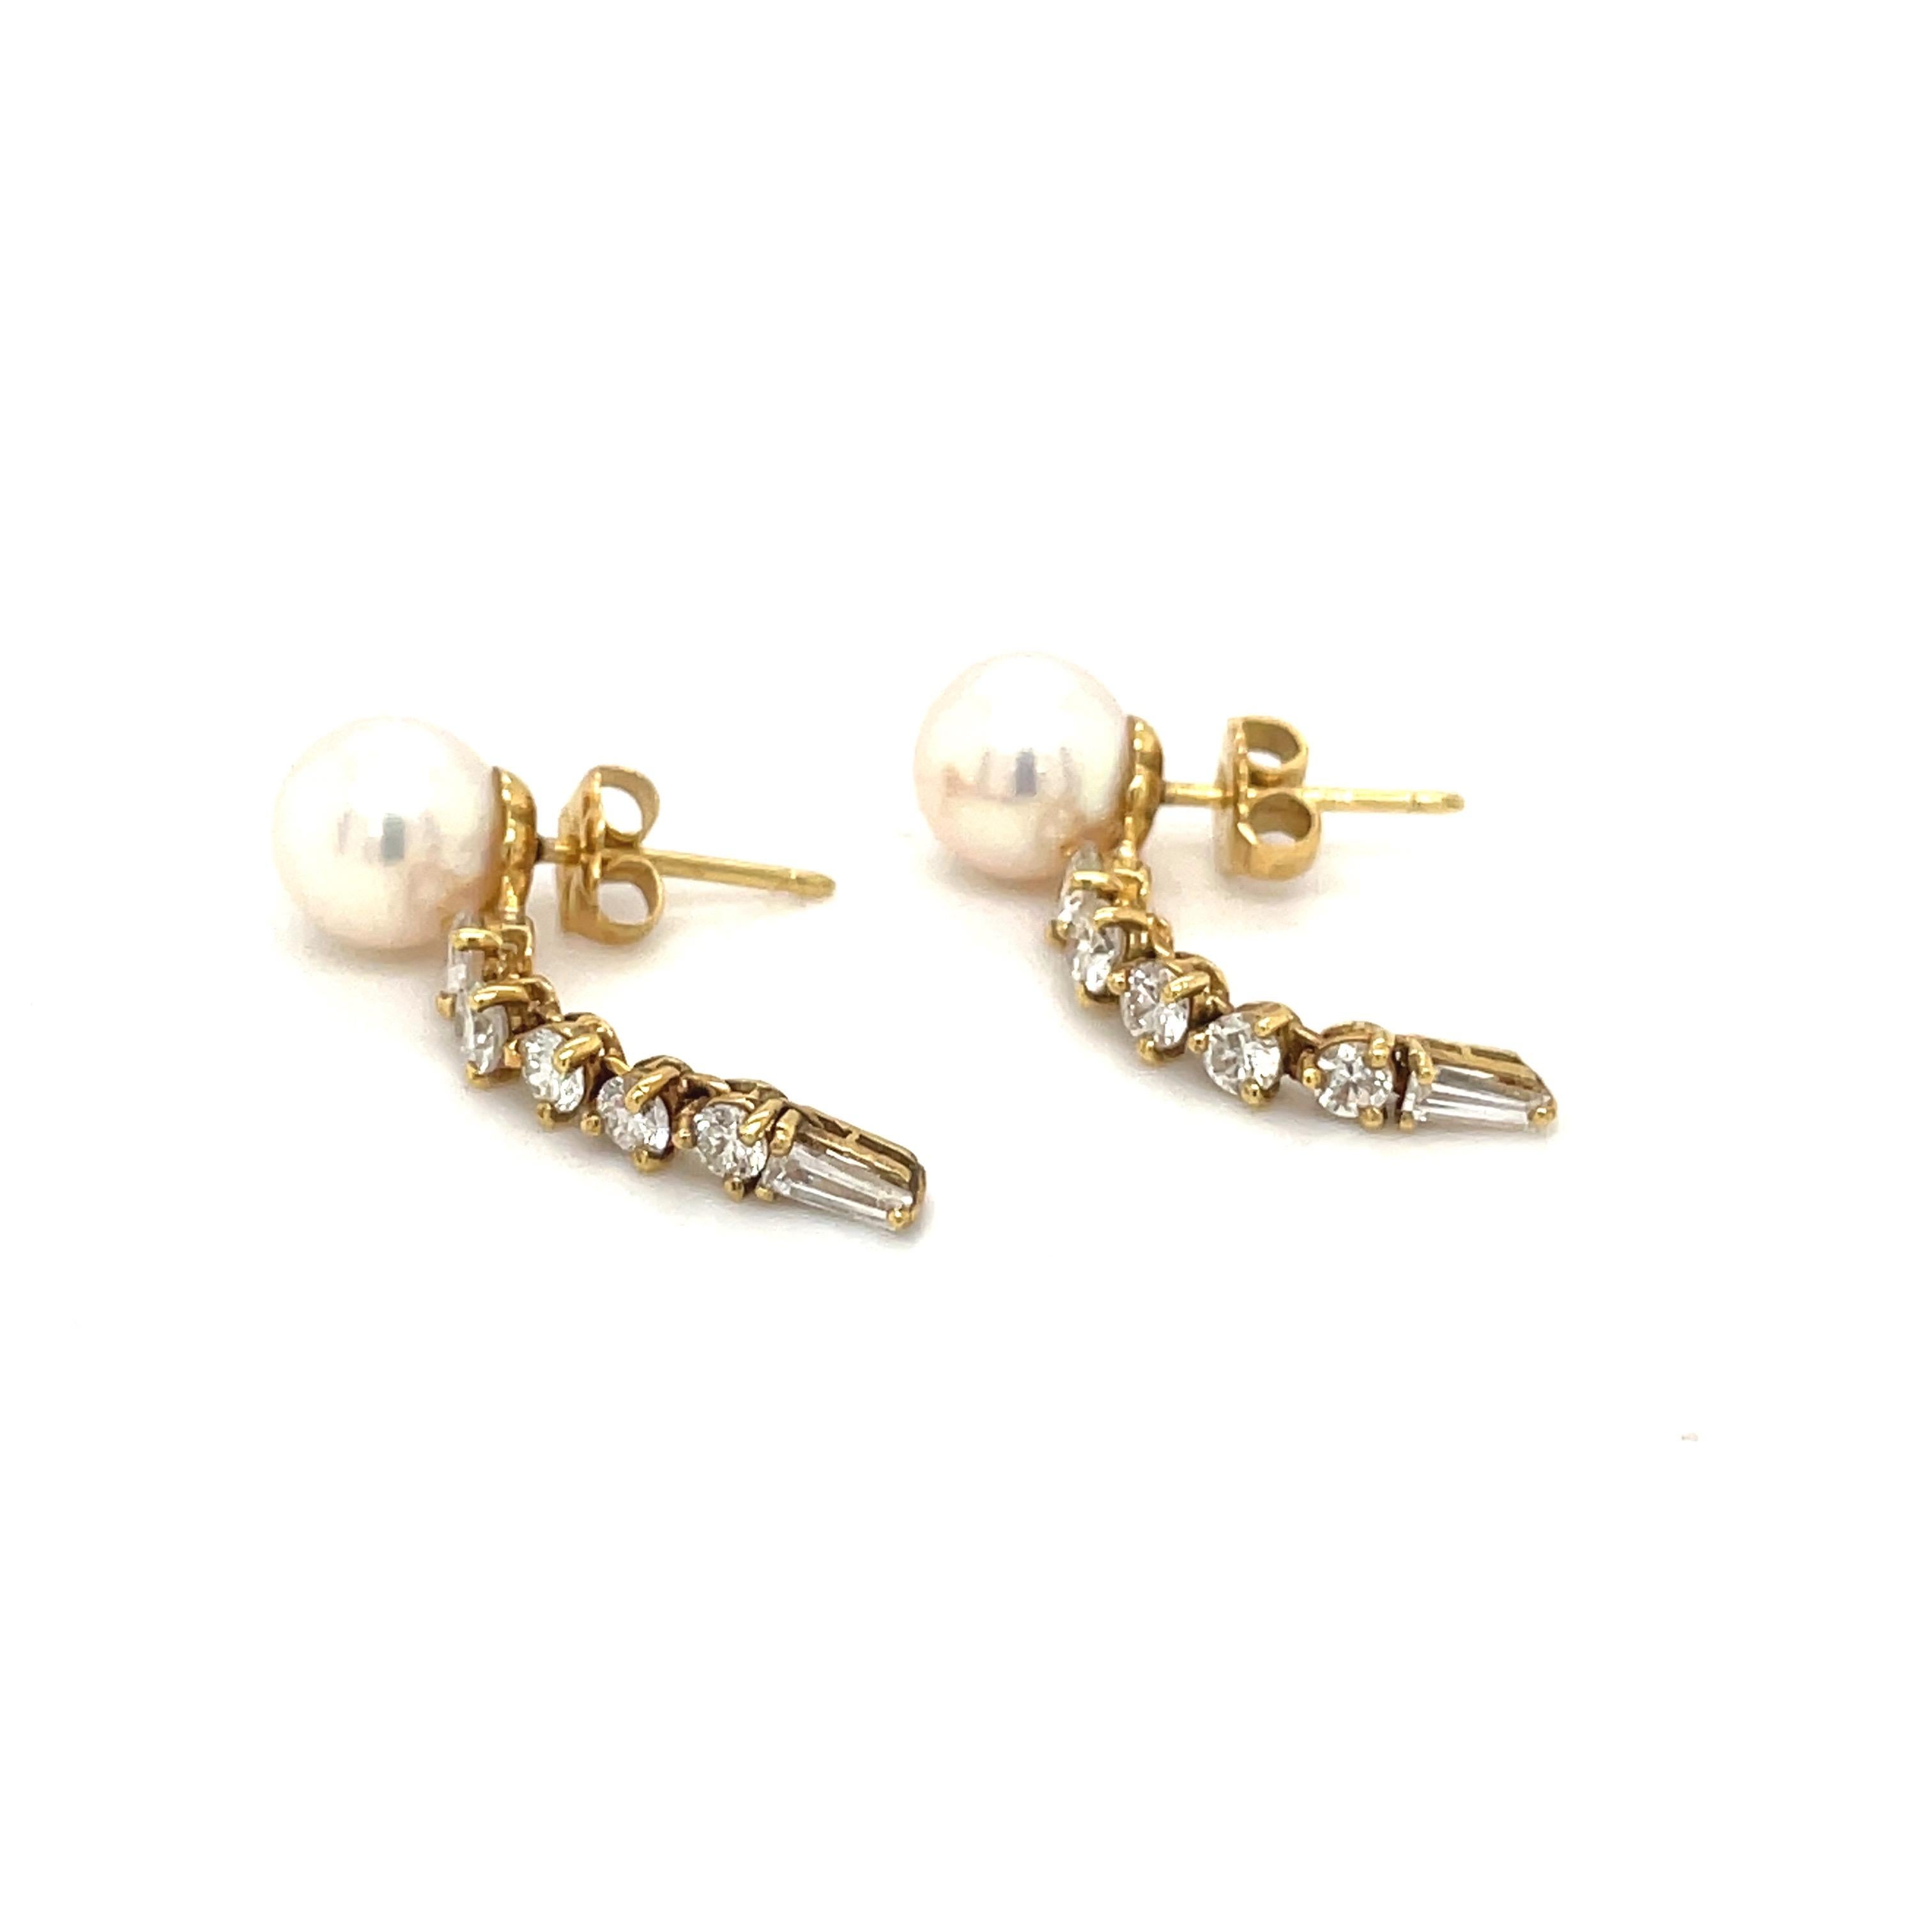 honora pearls earrings